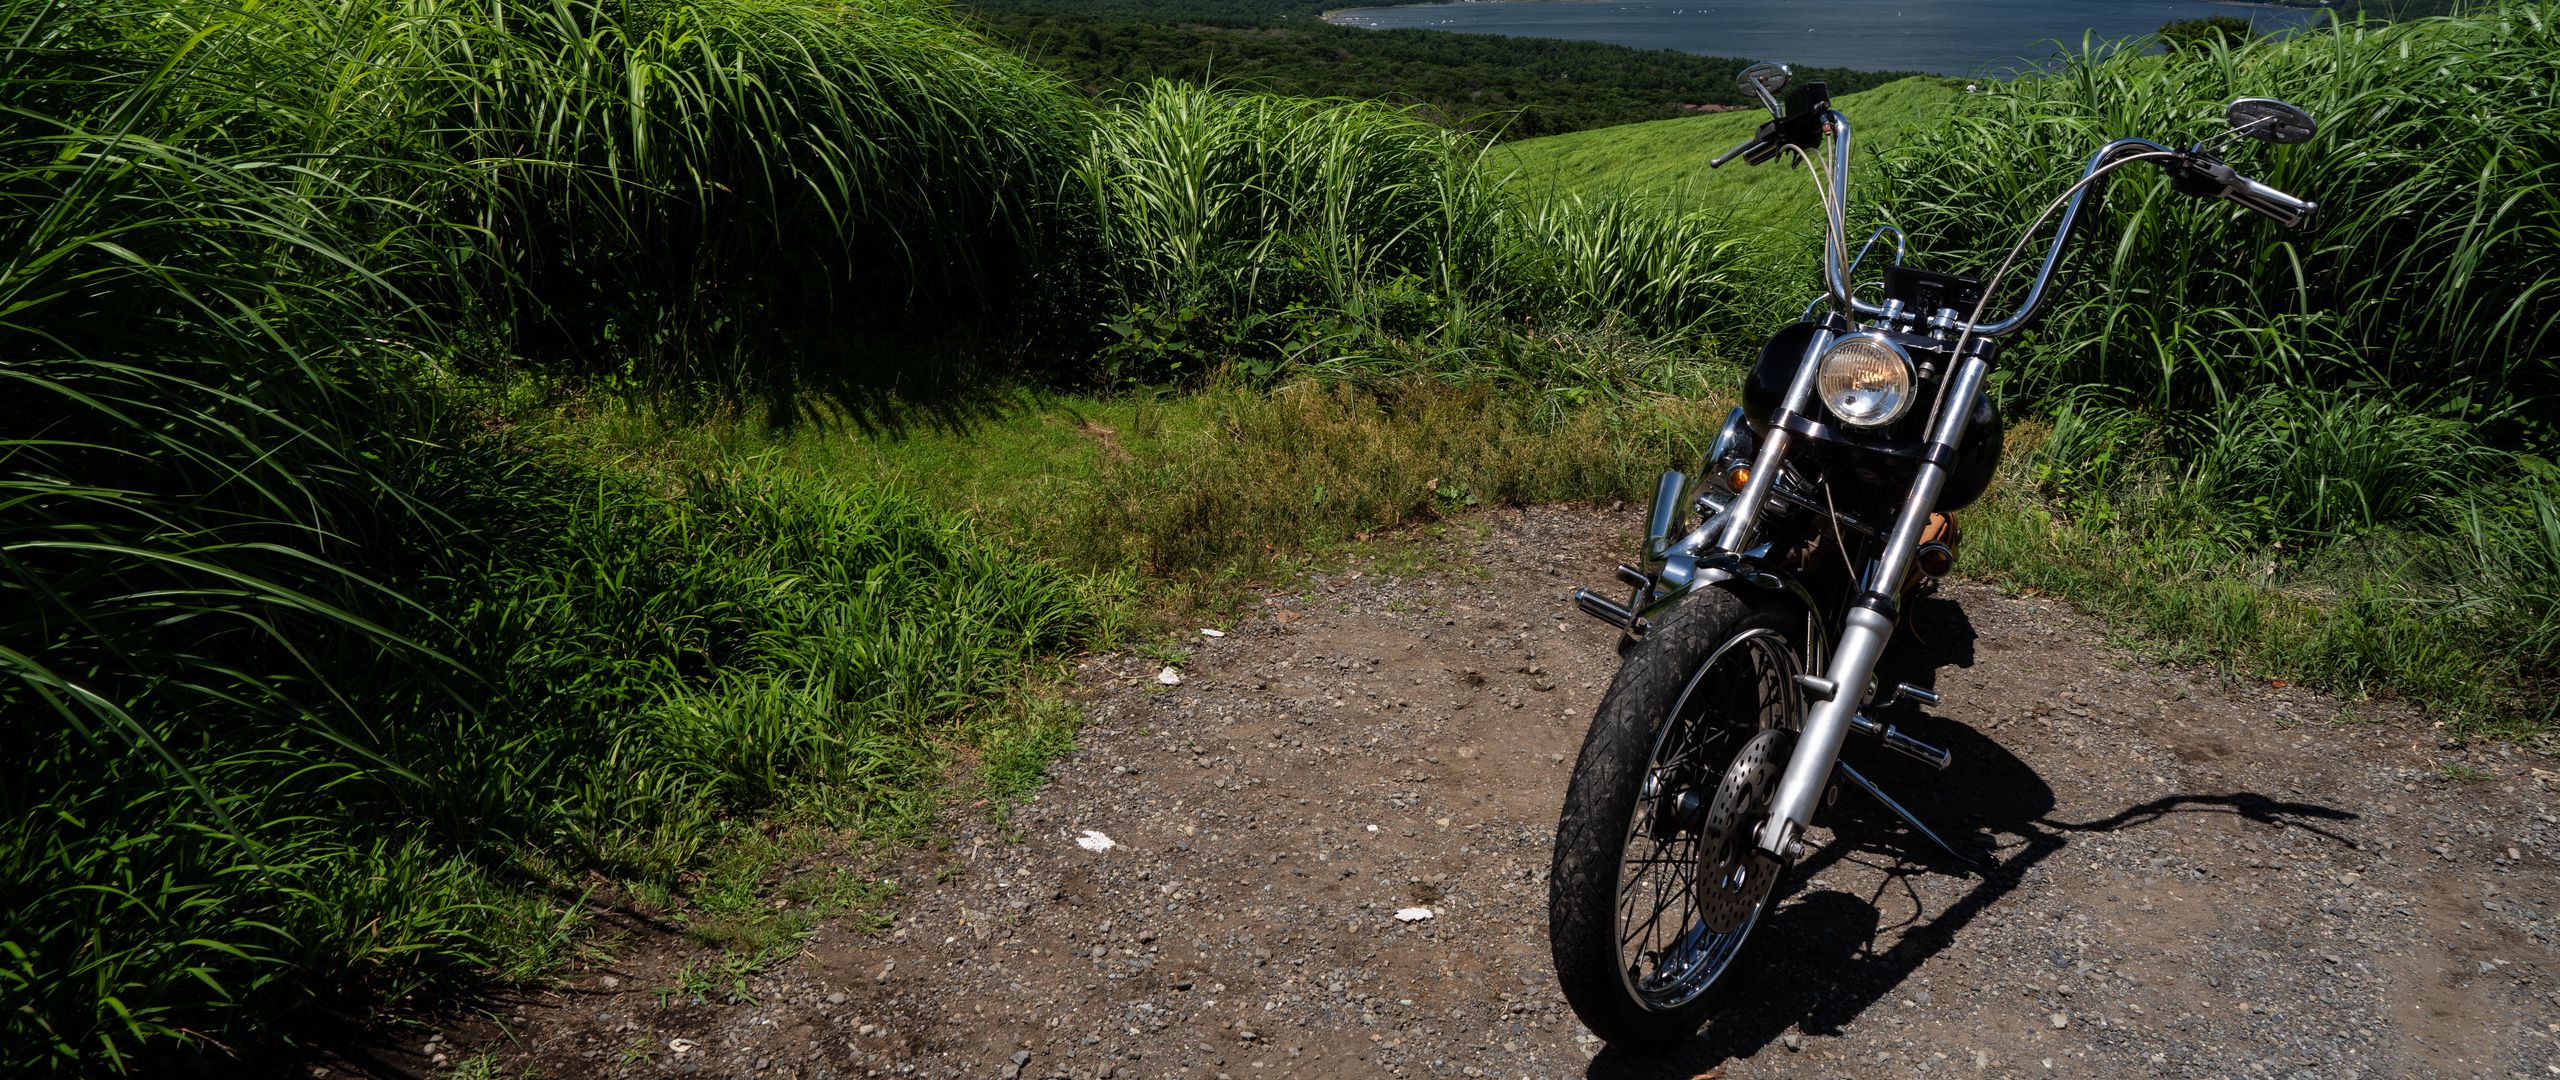 2560x1080 Обои мотоцикл, байк, озеро, трава